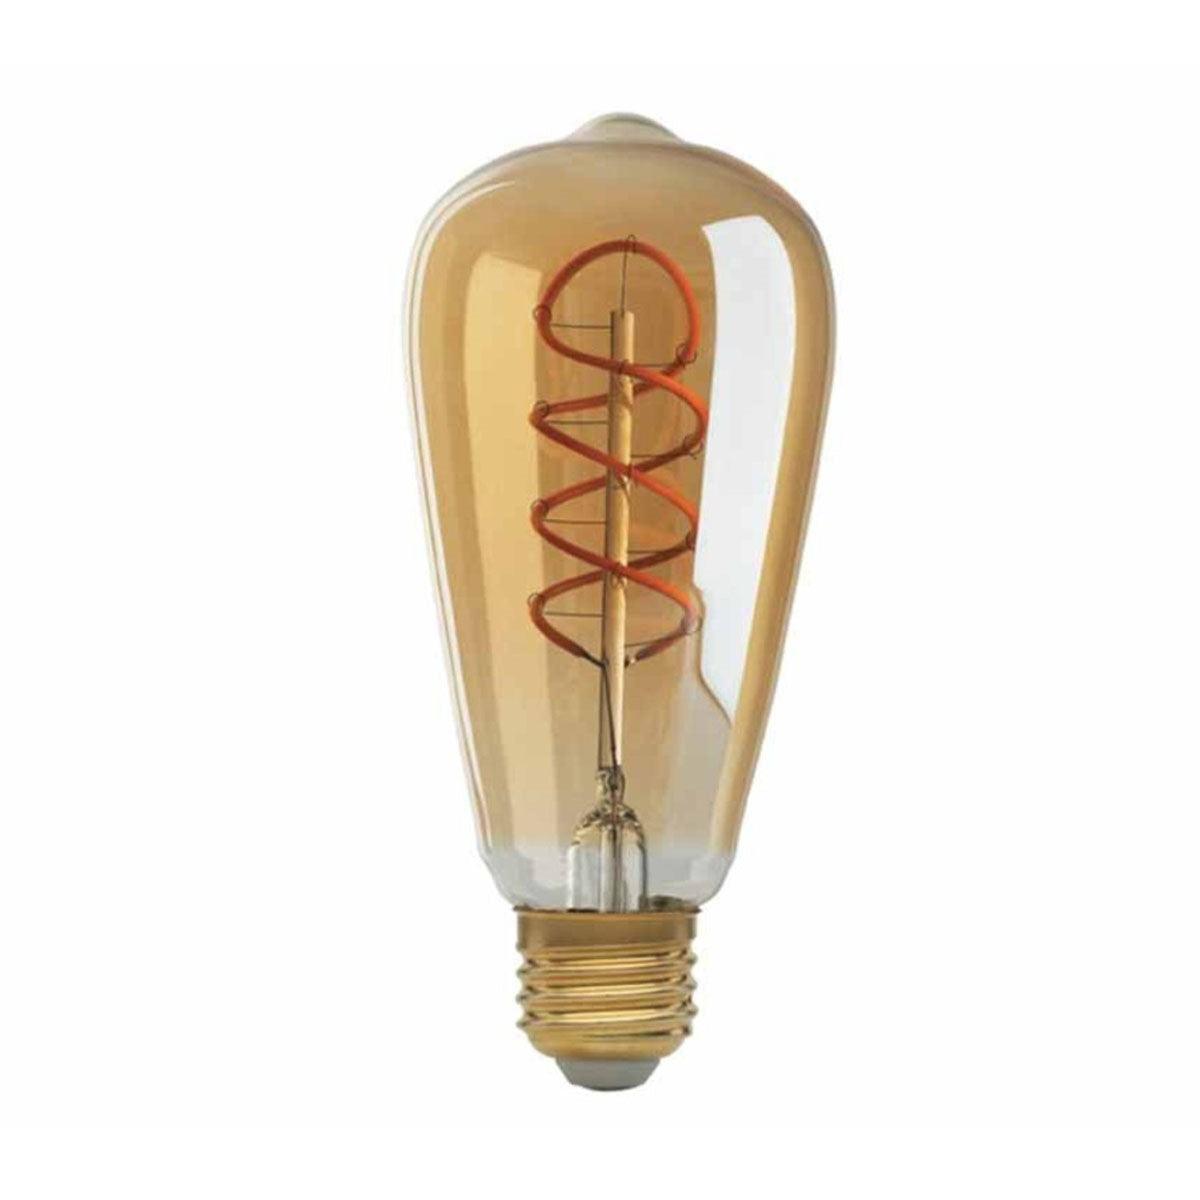 LED ST19 Straight Tapered Bulb, 5 Watt, 240 Lumens, 2000K, E26 Medium Base, Amber Finish - Bees Lighting